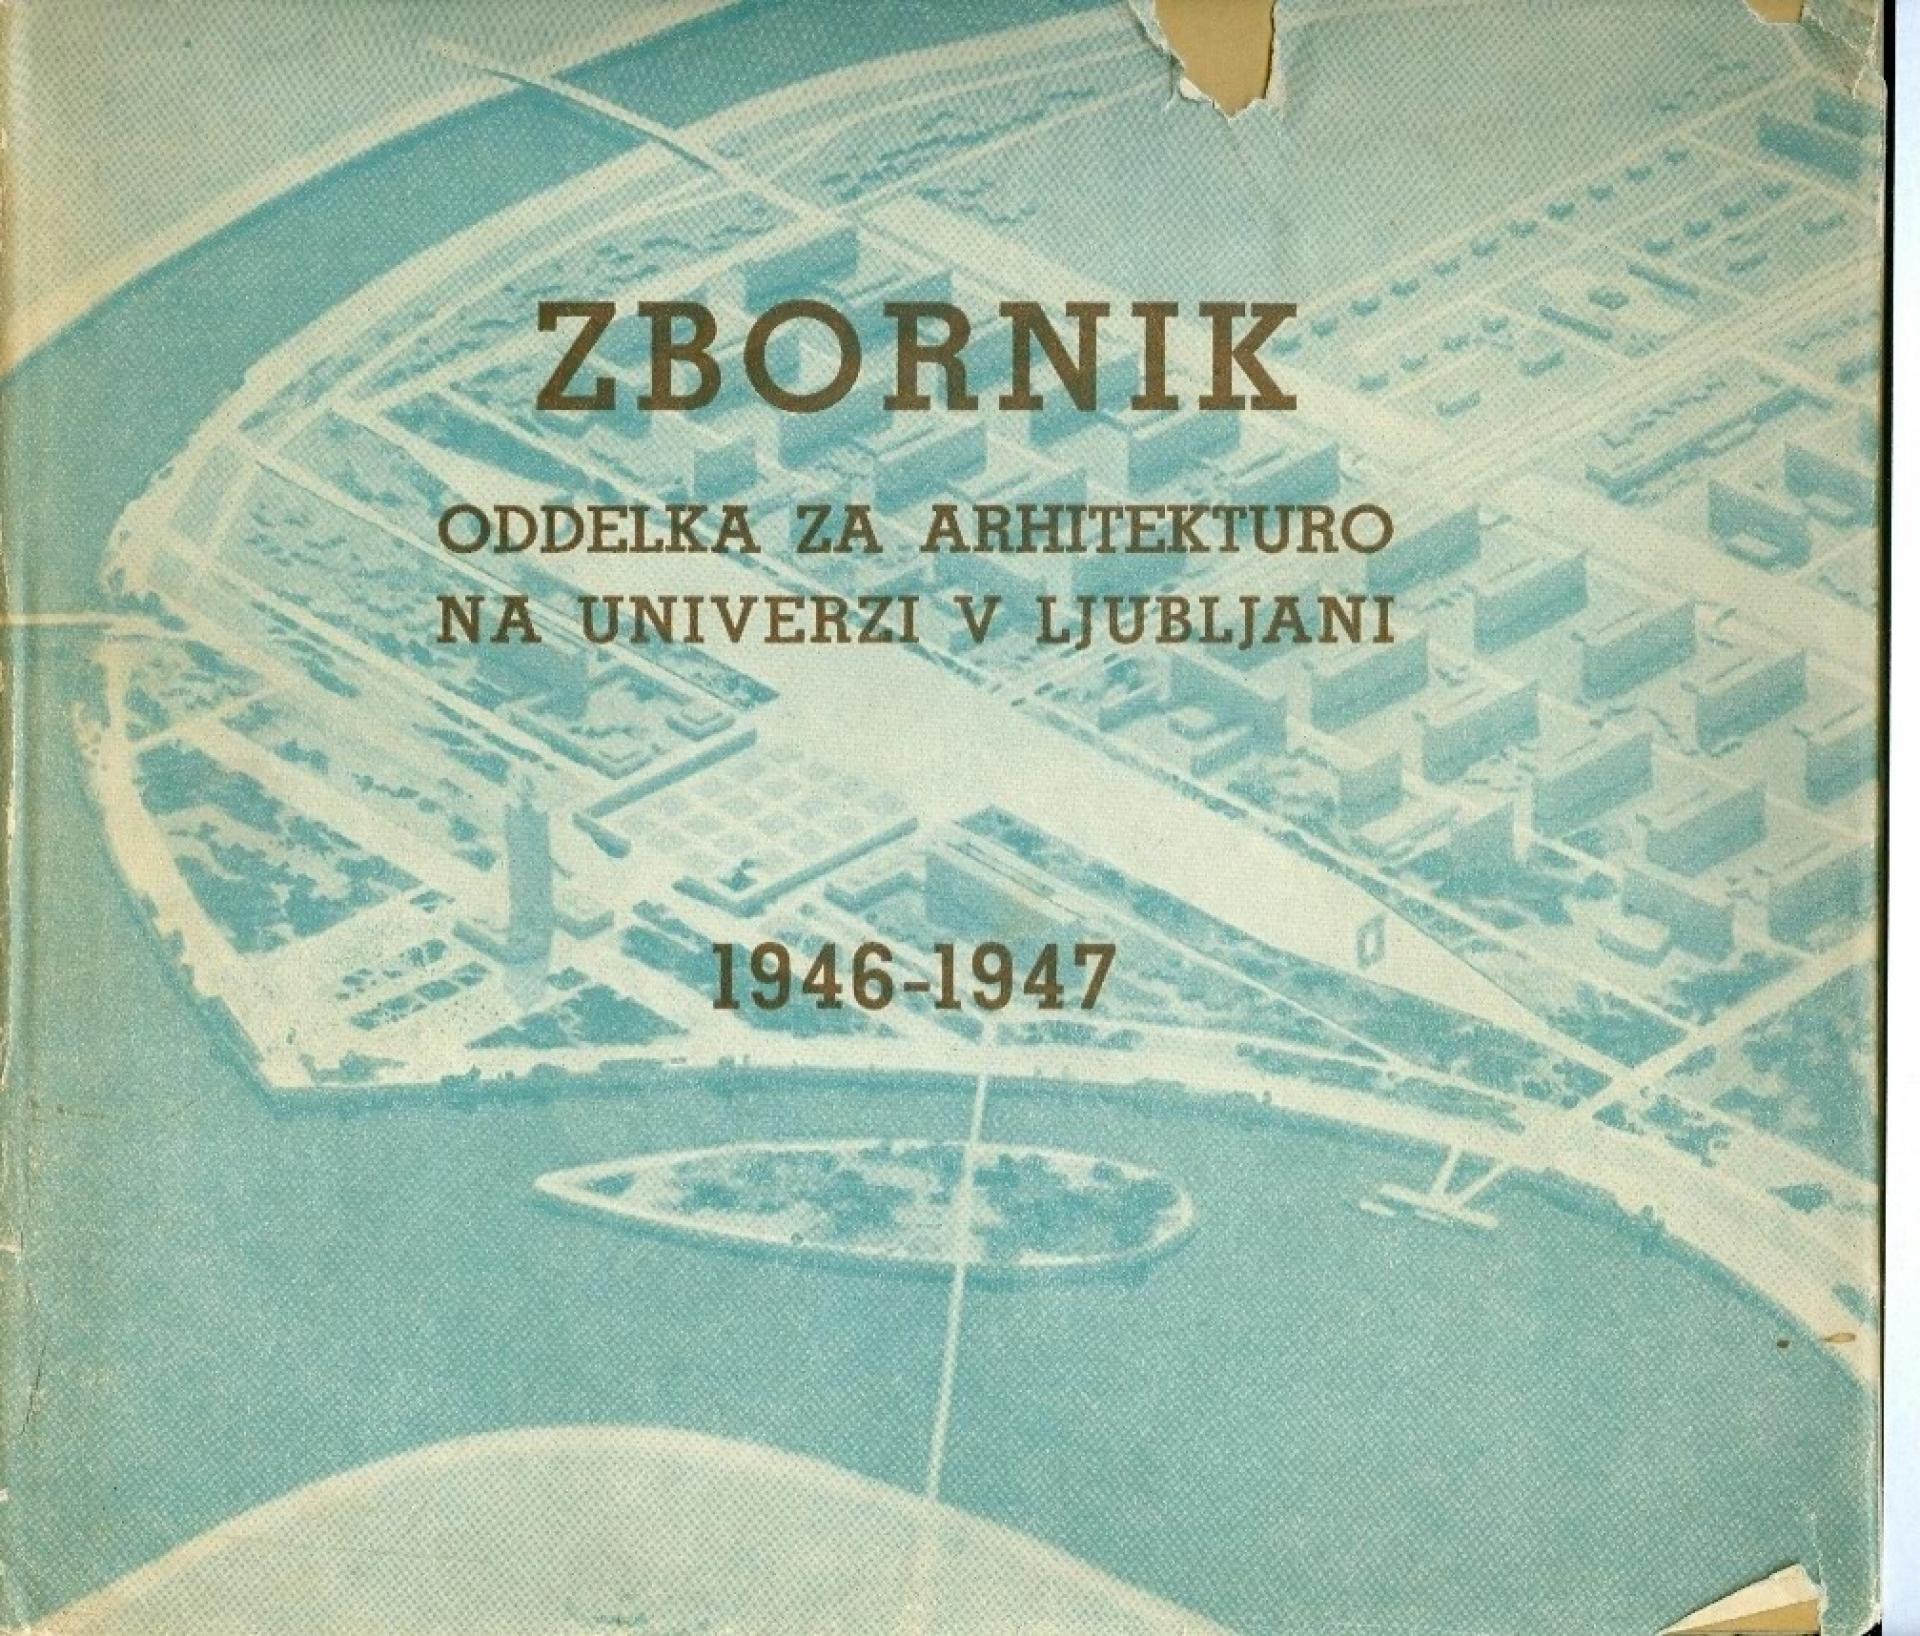 Marjan Mušič, France Ivanšek (ed.), Anthology of the Department of Architecture of Ljubljana University 1946-1947. | Published by DZS Ljubljana, 1948